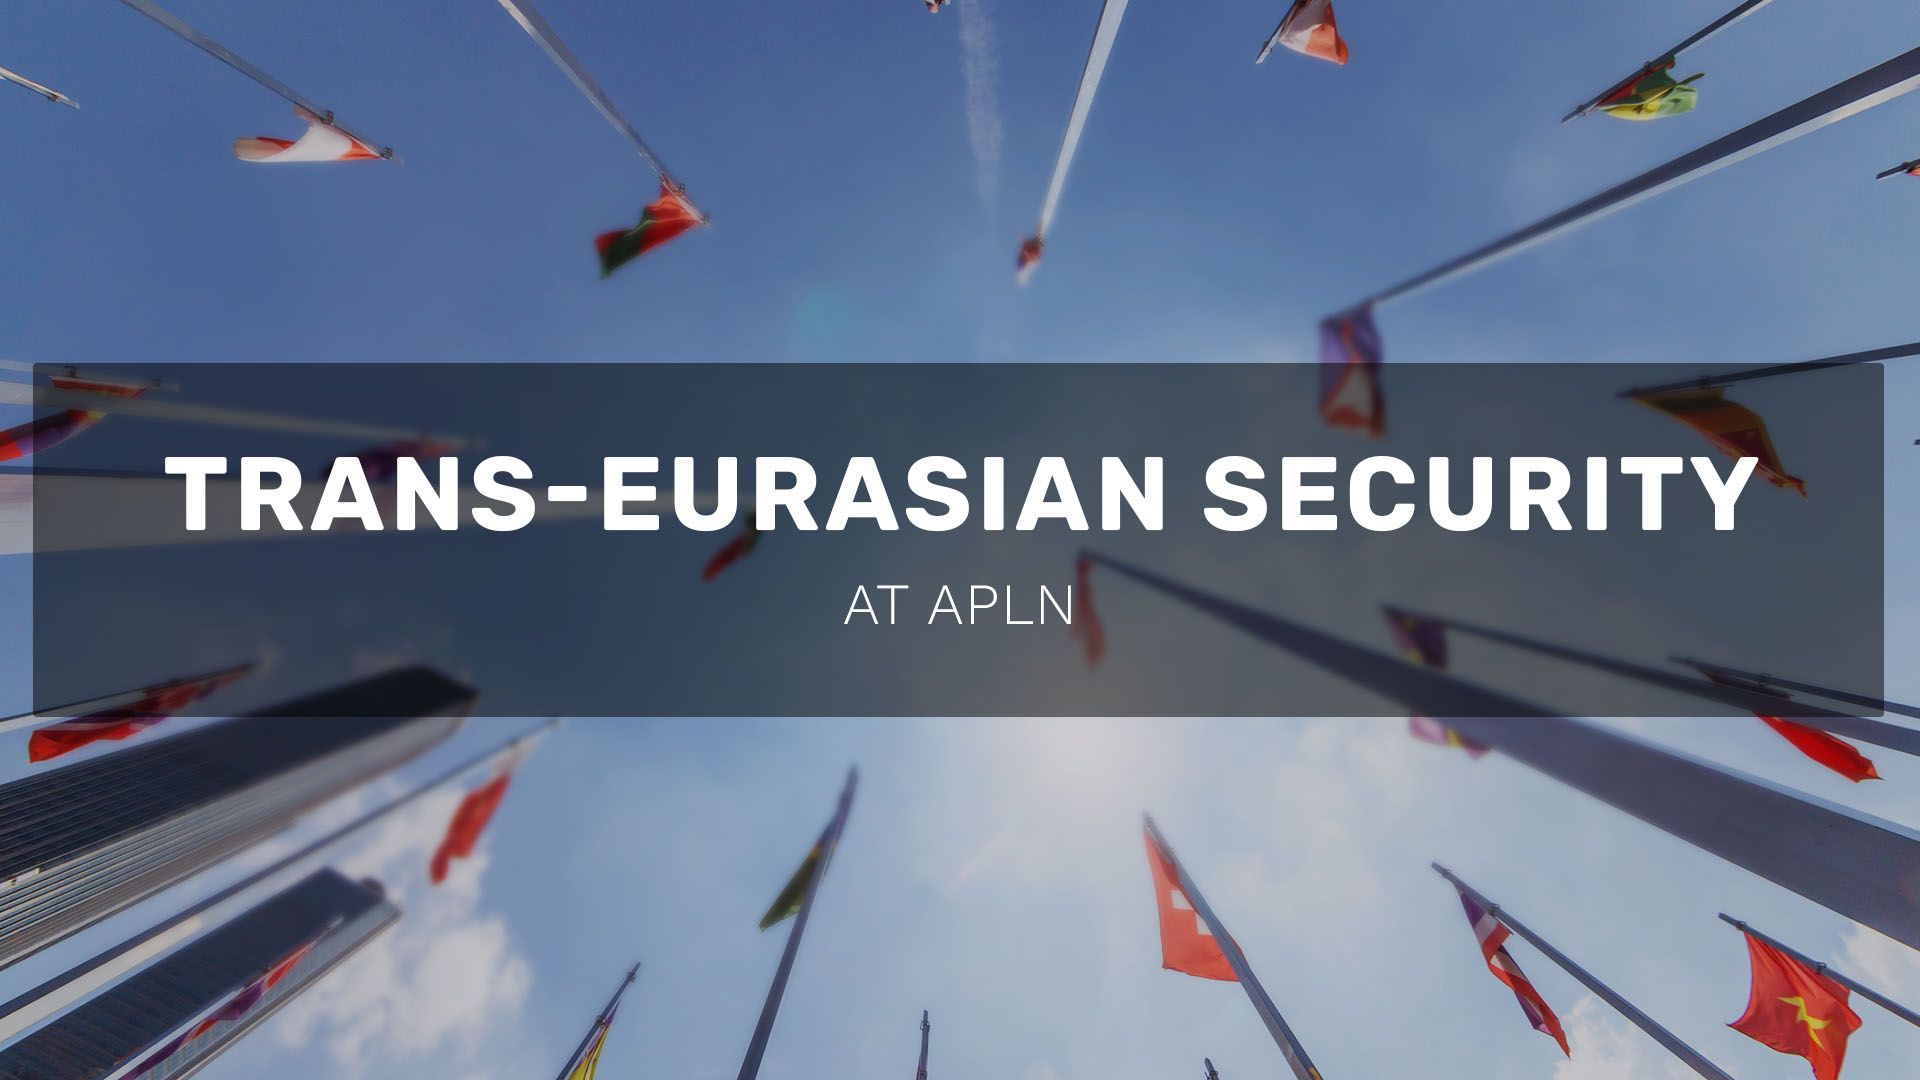 Trans-Eurasian Security